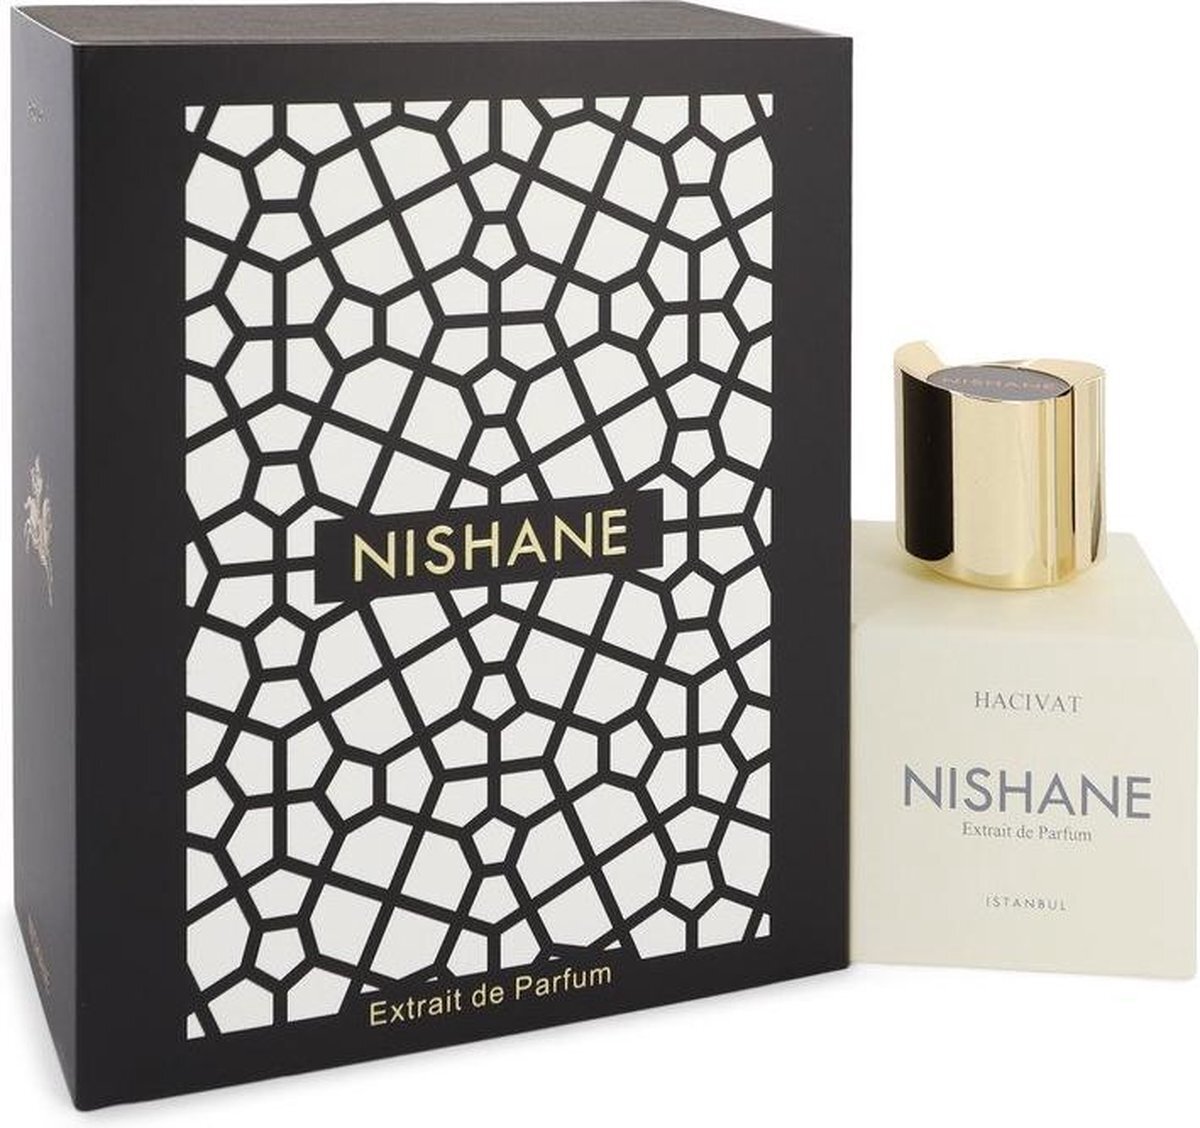 Nishane Hacivat Extrait de Parfum 50 ml parfum / unisex